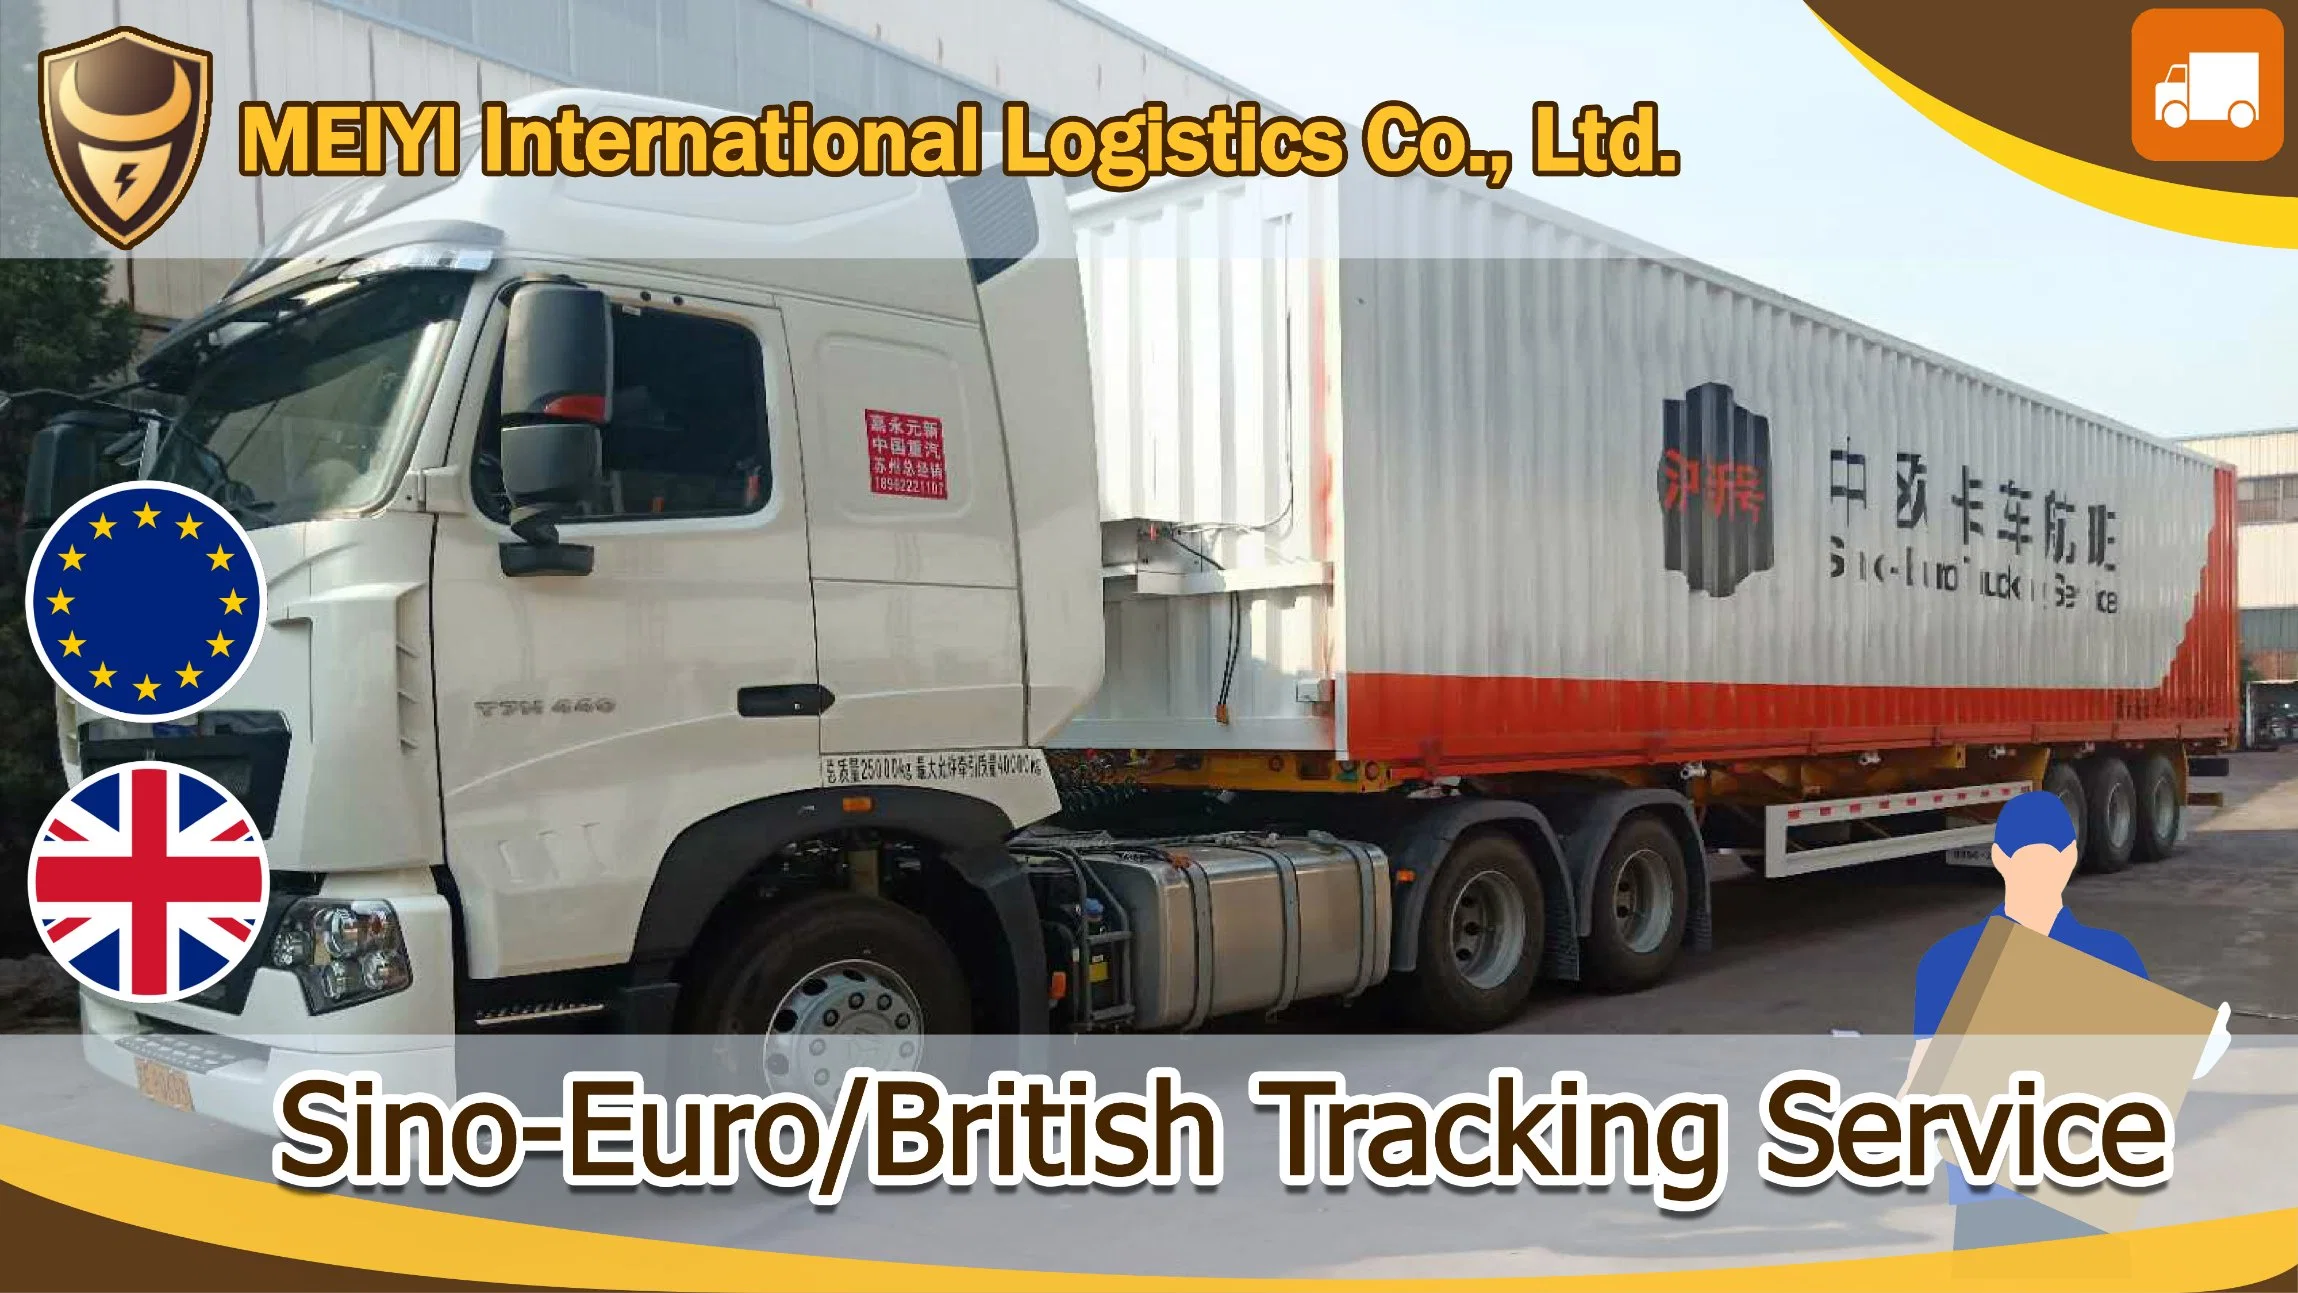 أفضل وأسرع وأرخص شركة شحن لخدمة الشاحنات الصينية-الأوروبية للشحن إلى ألمانيا